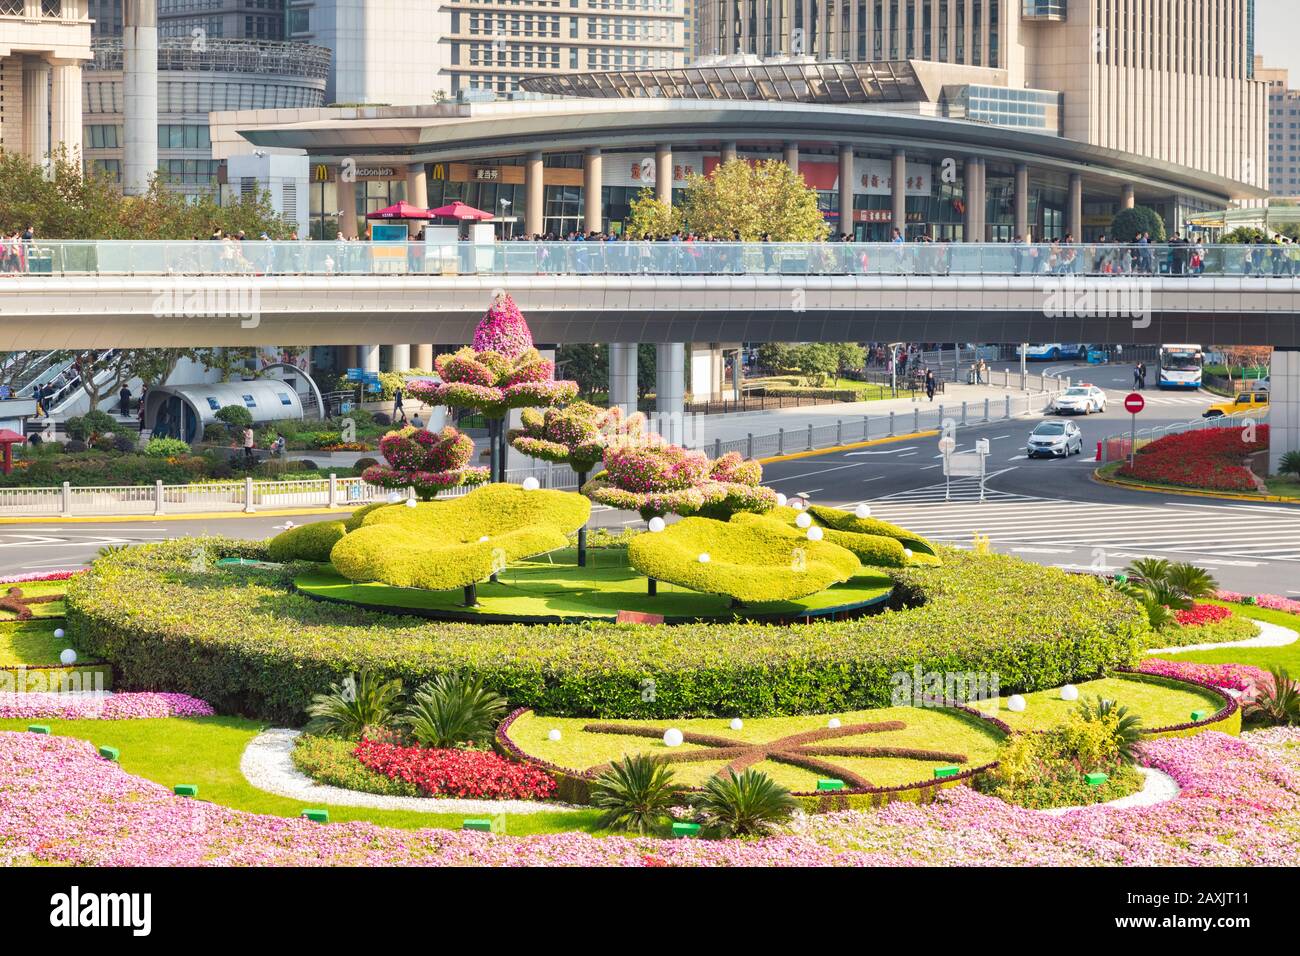 1er décembre 2018 : Shanghai, Chine - Topiary et plantes au centre d'un rond-point dans le district de Pudong. Banque D'Images